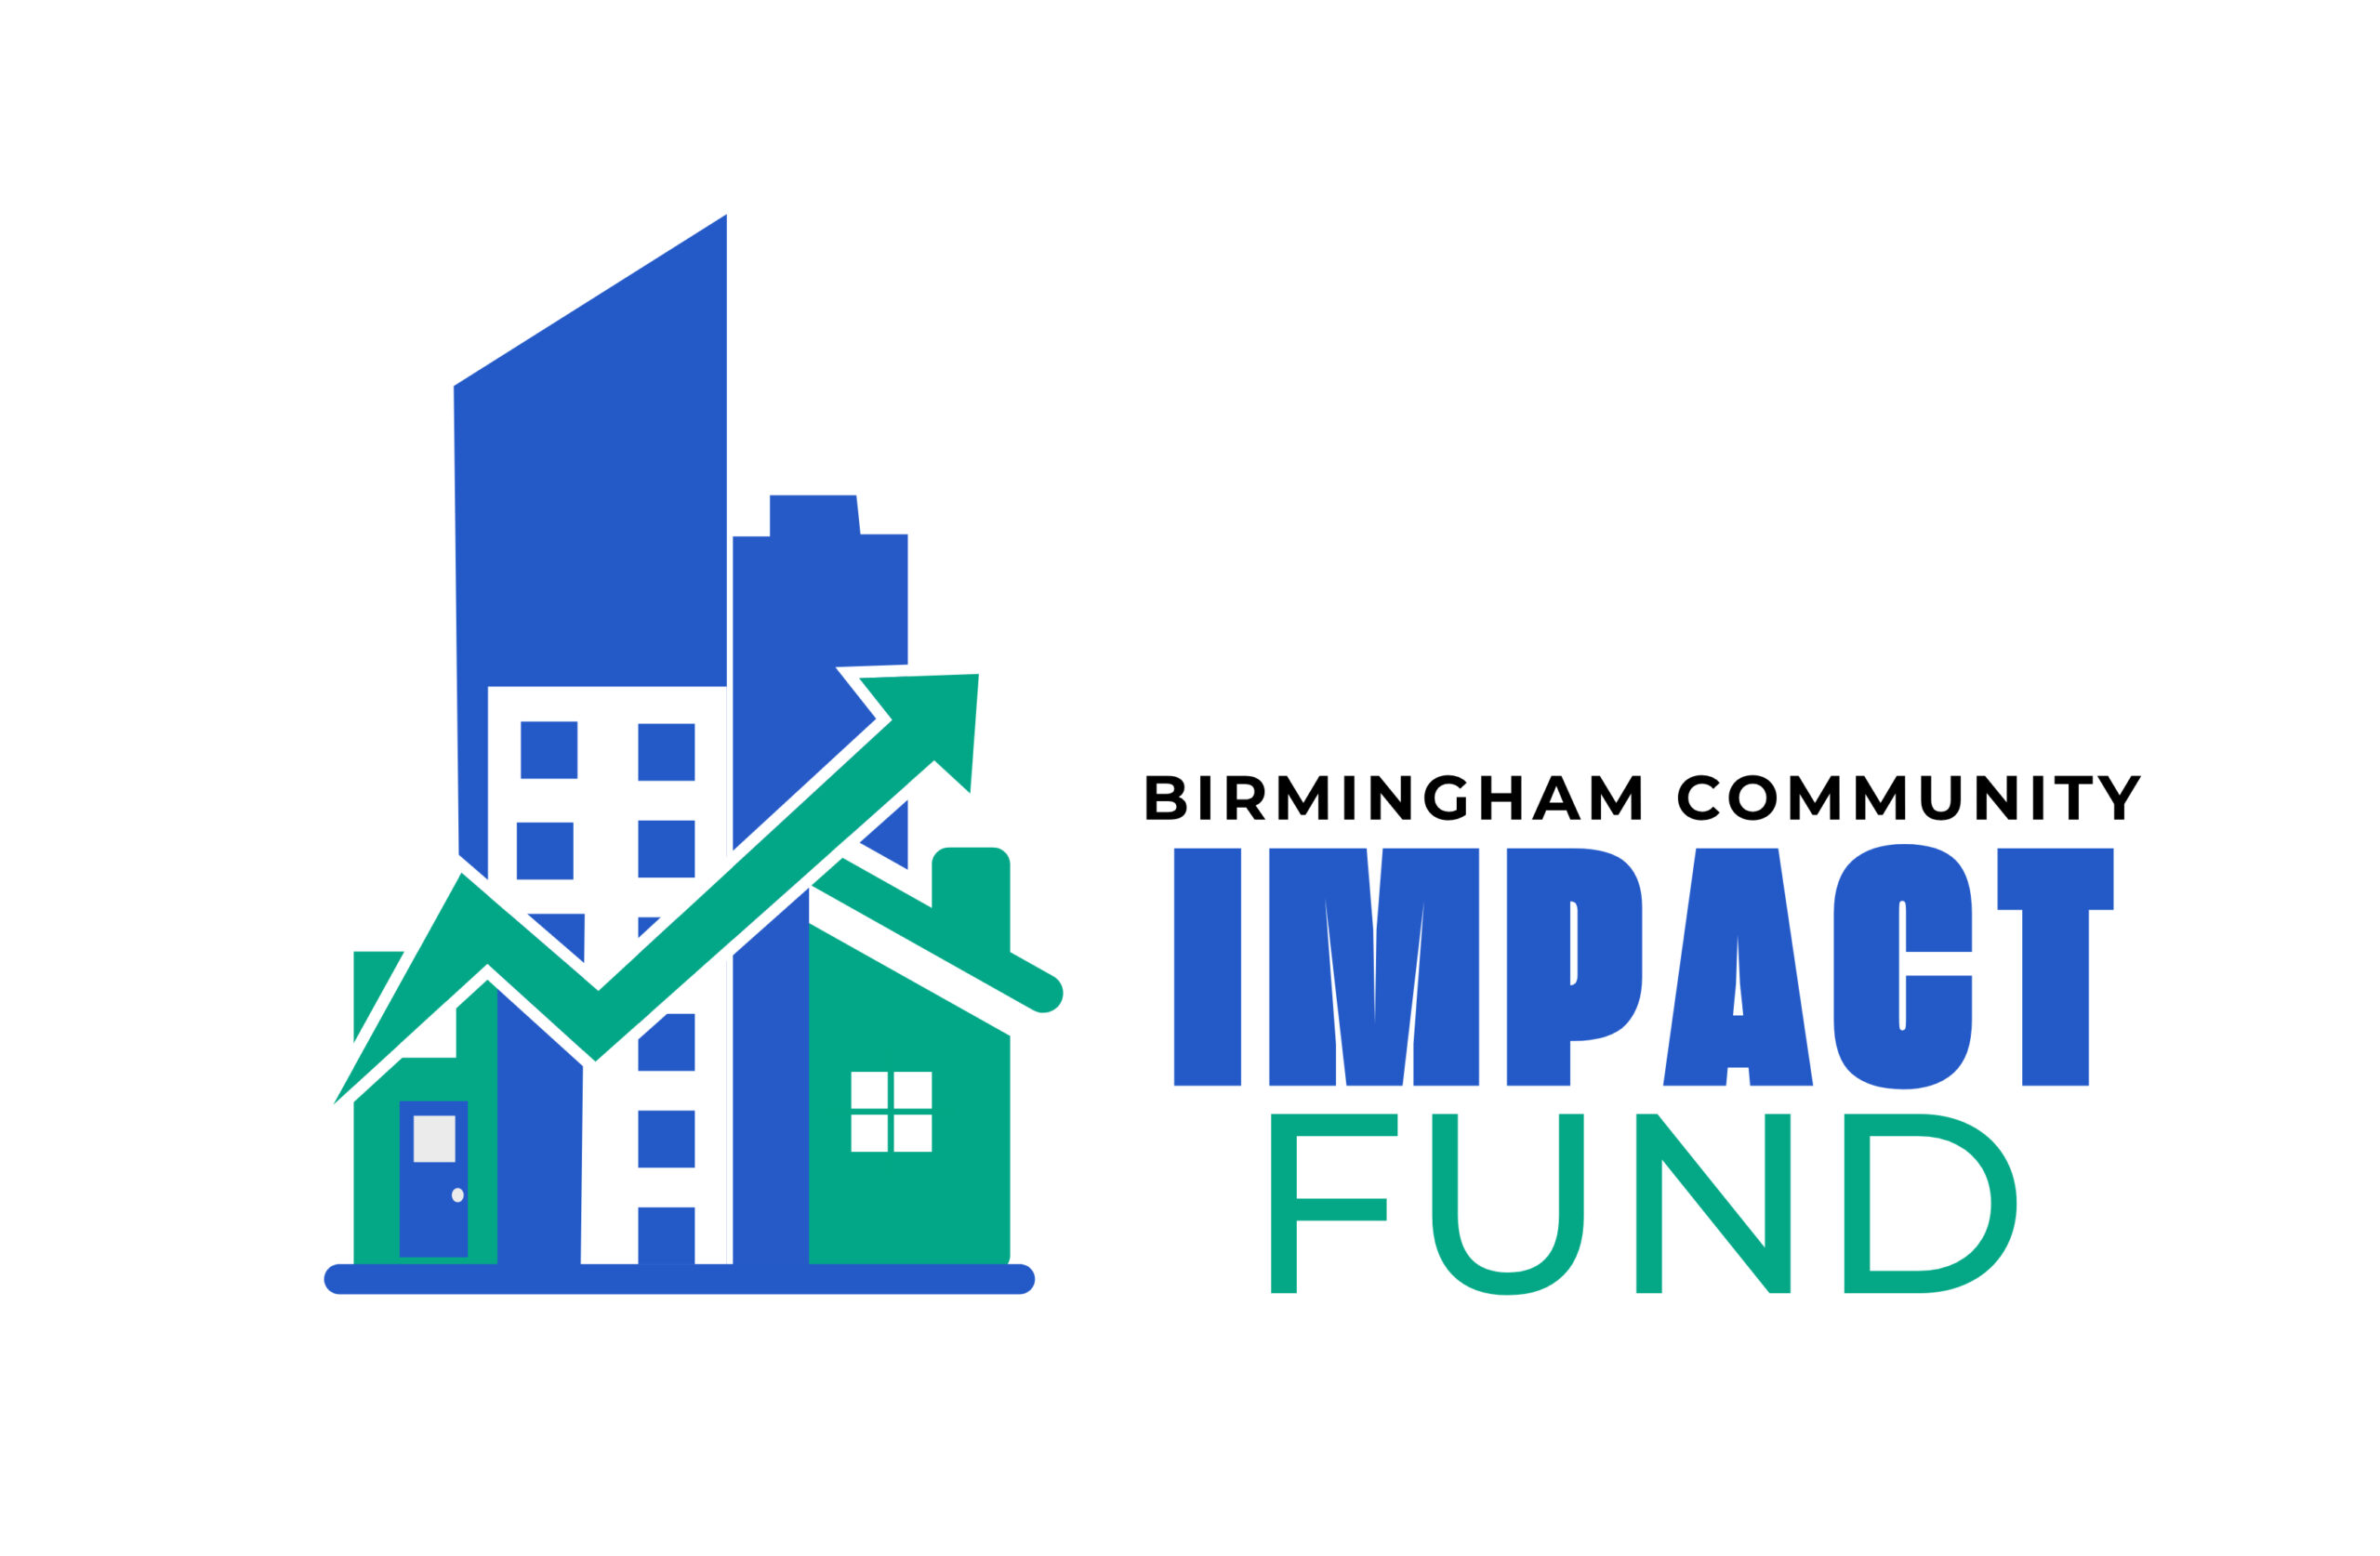 Birmingham Community IMPACT Fund